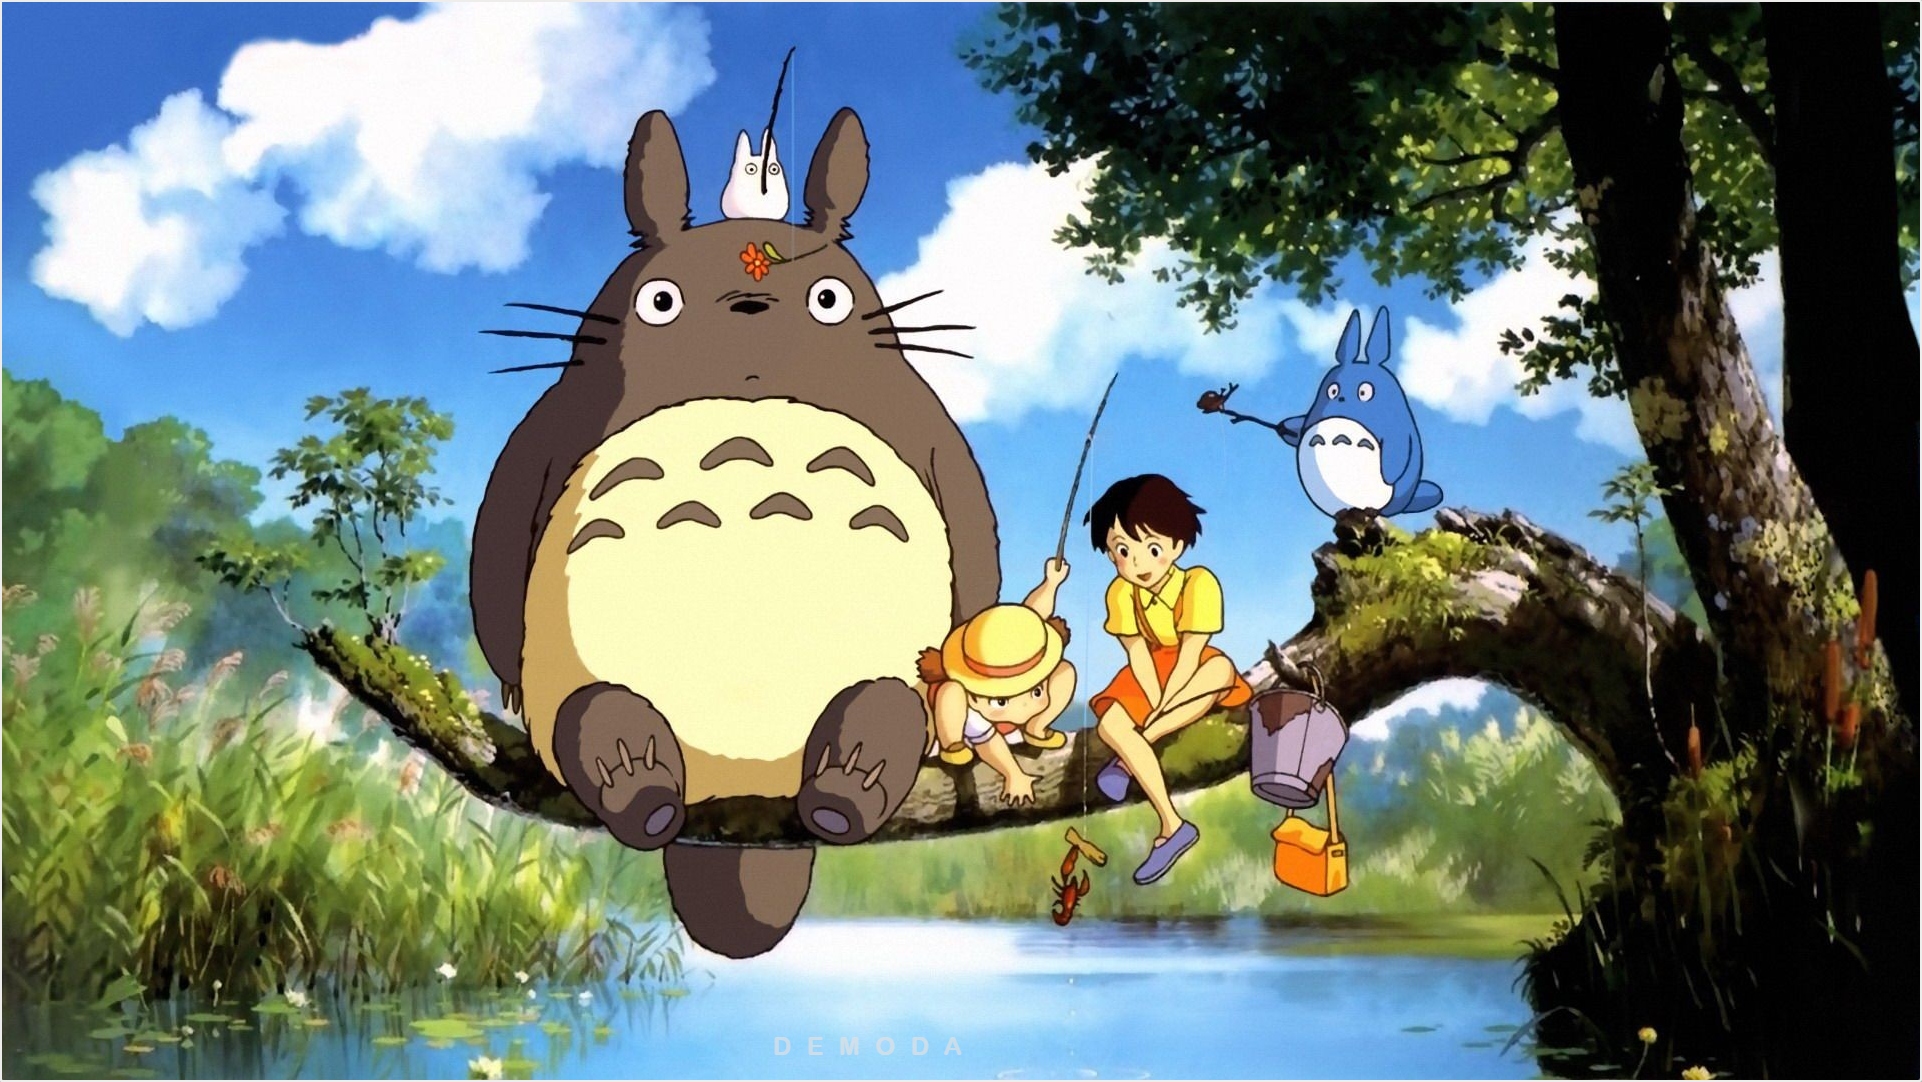 Hình Nền Totoro: Hãy cùng khám phá vườn thần tiên trong hình nền Totoro đầy màu sắc và mộng mơ. Chú Totoro với chiếc ô kính bị gió cuốn sẽ đưa bạn vào thế giới của sự bình yên, tươi mới và ngập tràn niềm vui.